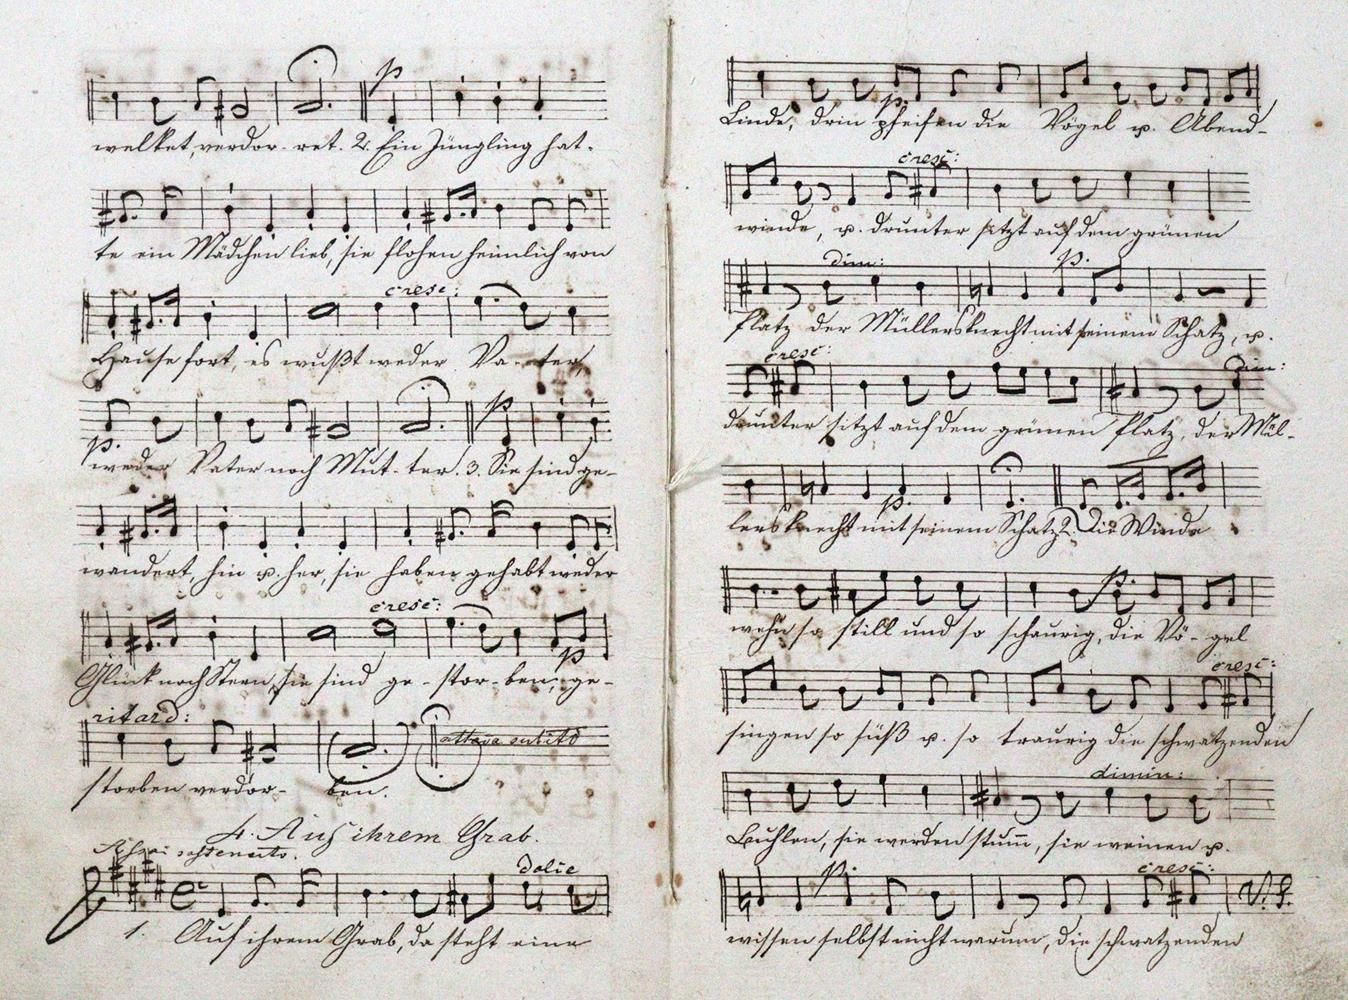 Papst,W. Chants pour soprano, alto, ténor et basse, composés par Felix Mendels(s&hellip;